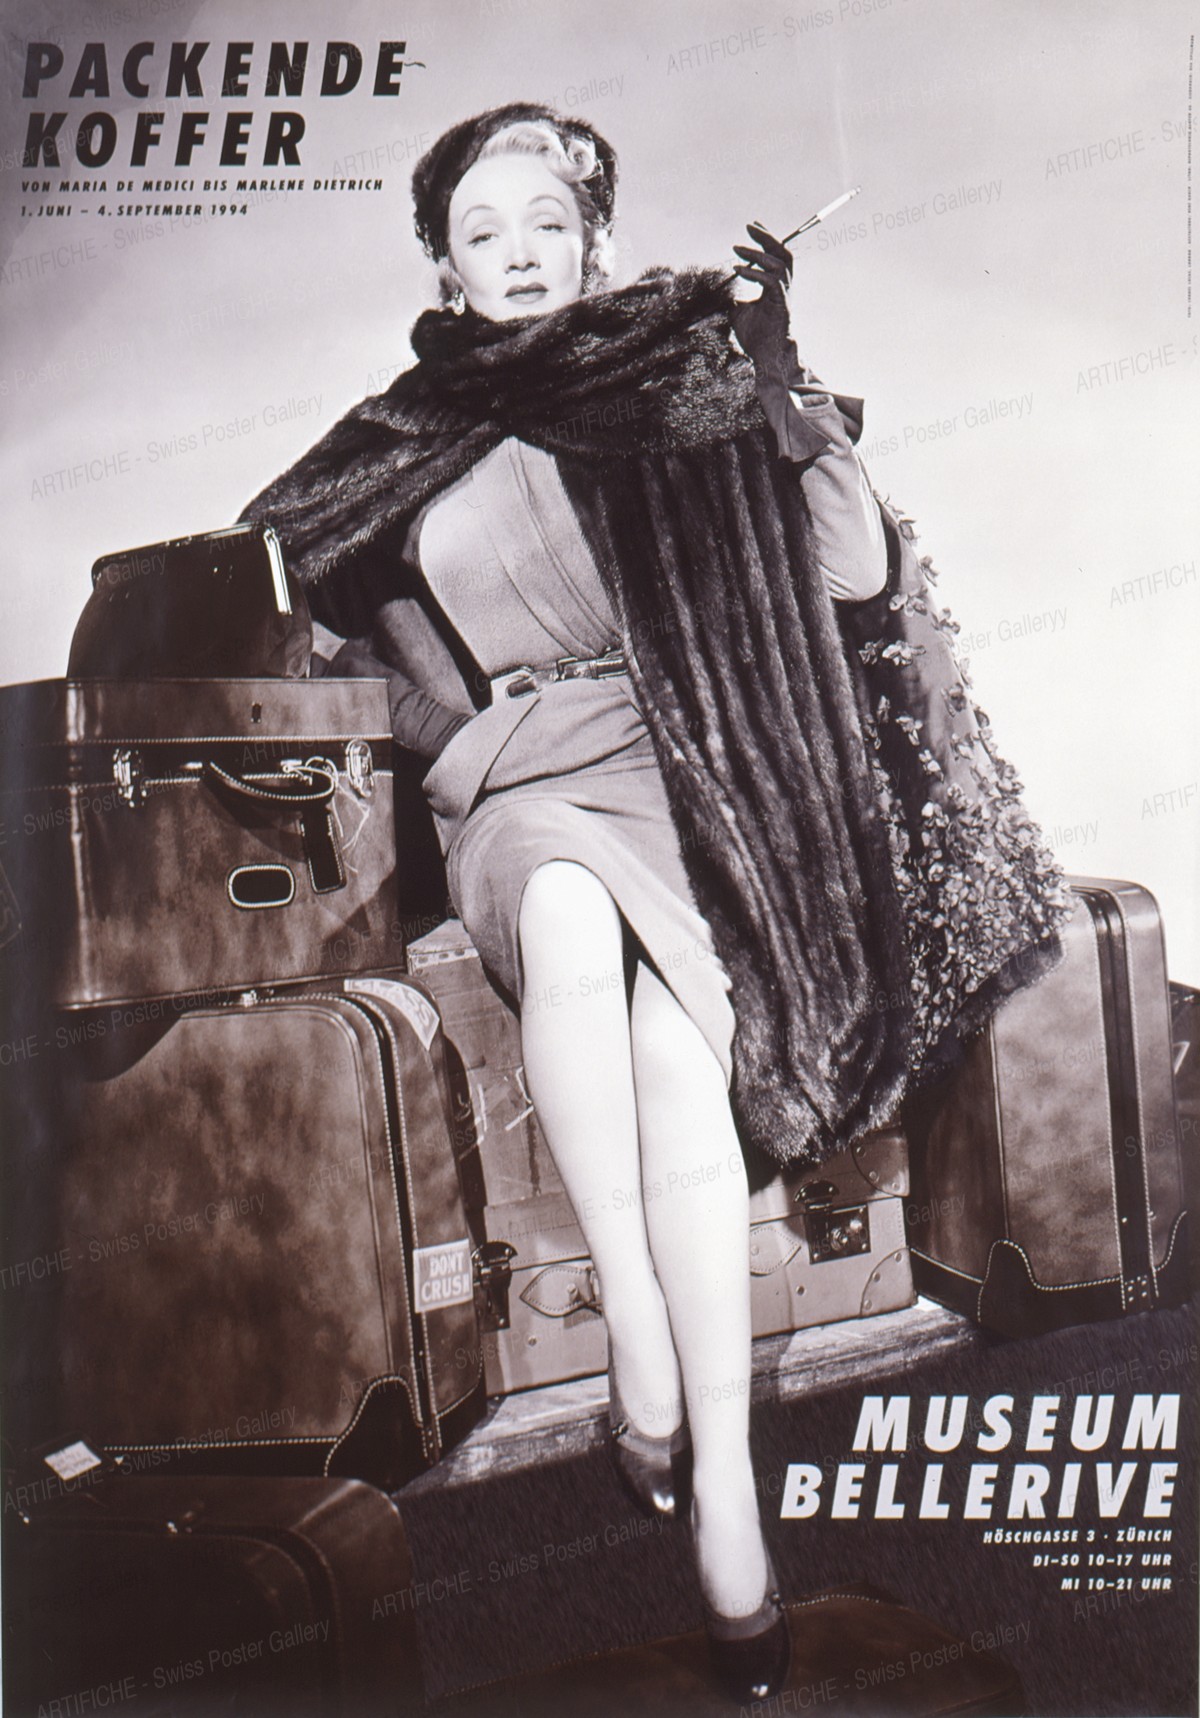 Museum Bellerive – Packende Koffer – Marlene Dietrich, René Gauch